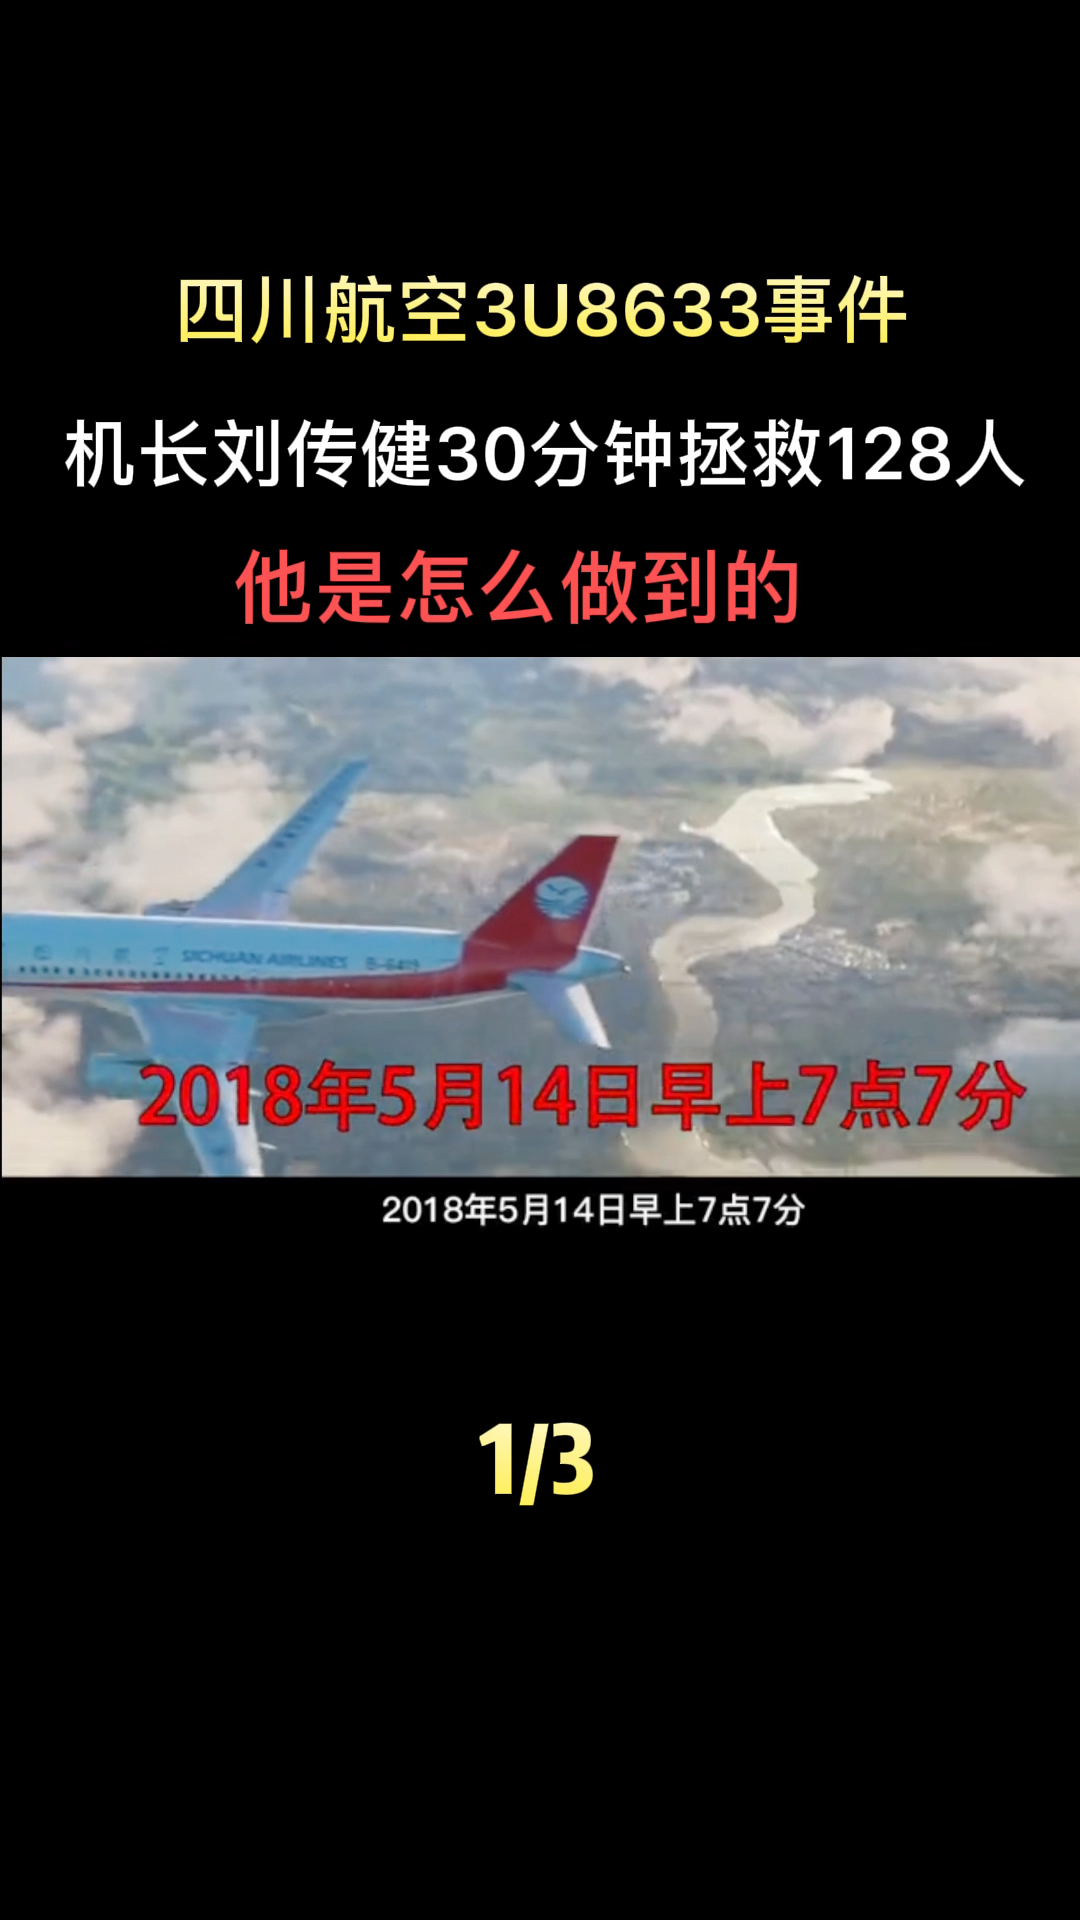 四川航空3u8633事件图片